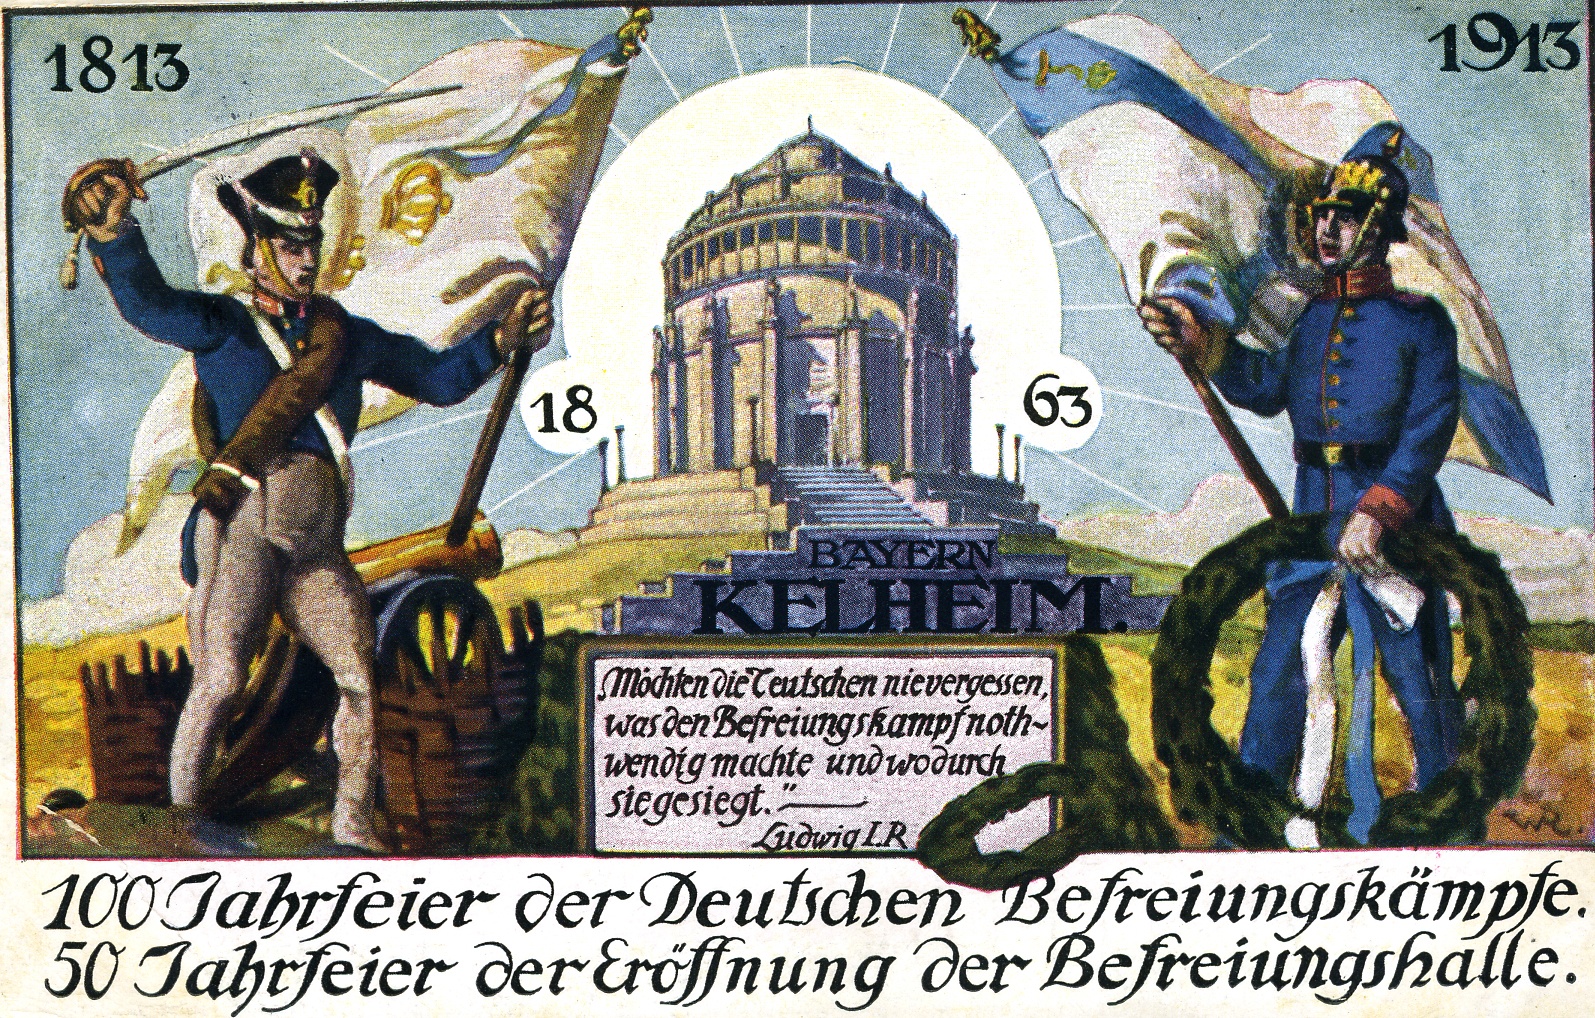 Postkarte Regensburg 1913 (Historisches Museum der Pfalz, Speyer CC BY)